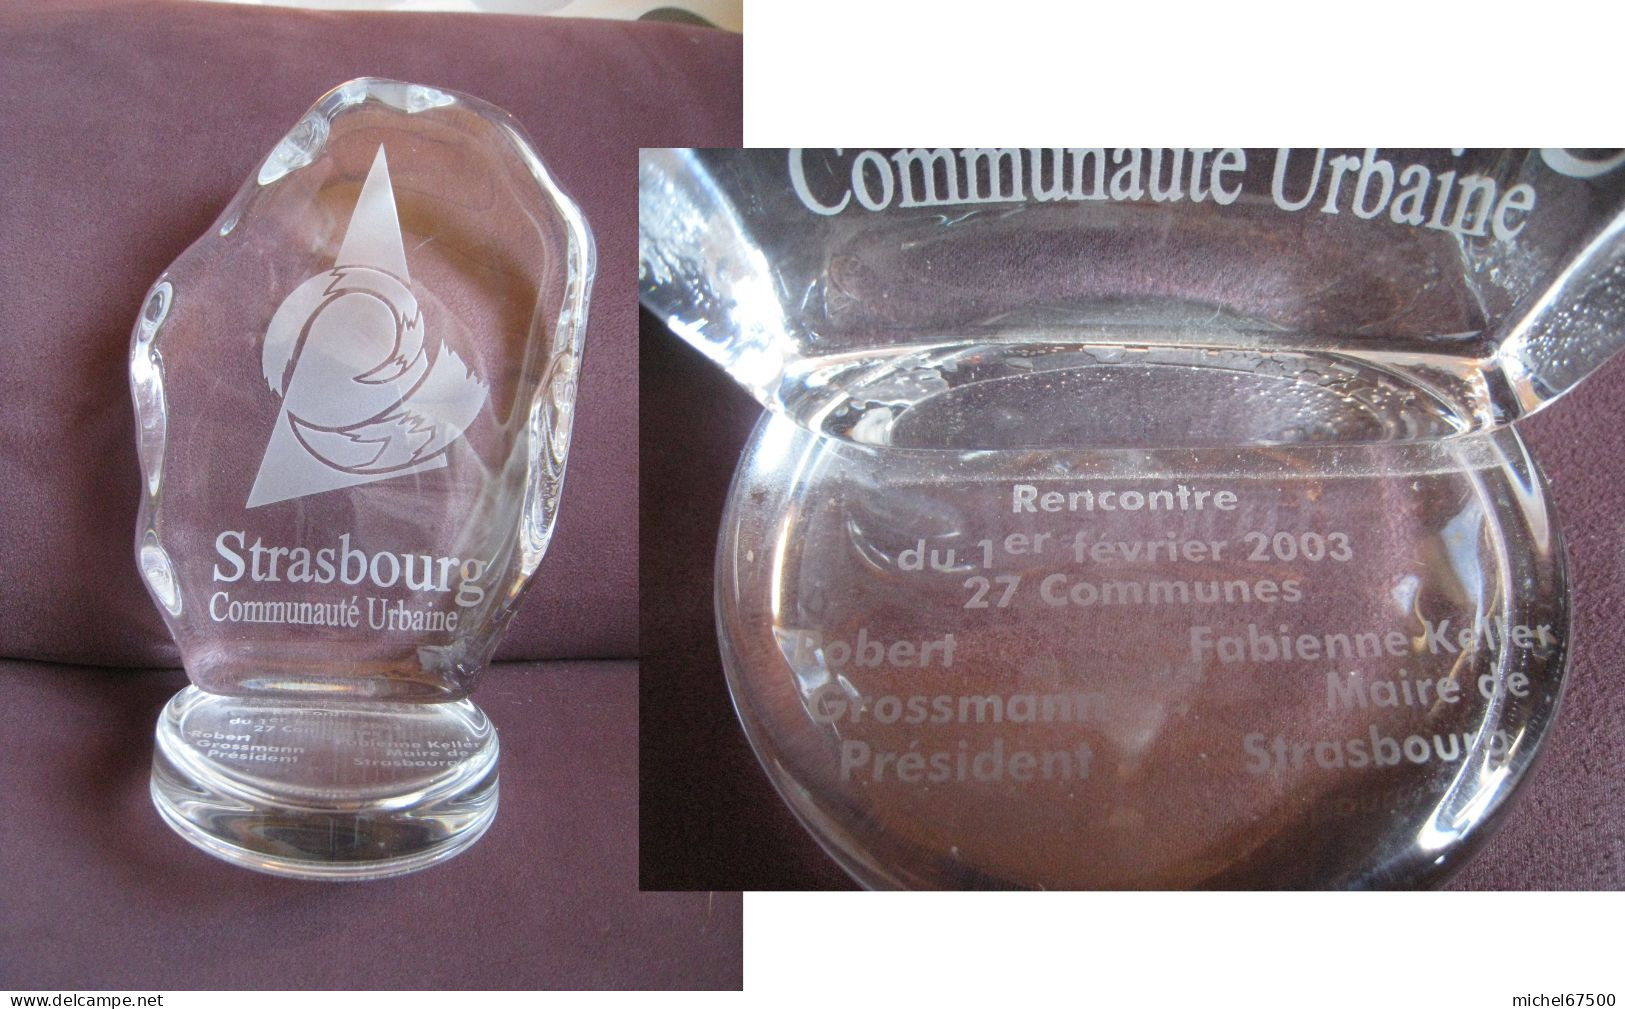 STRASBOURG Communauté Urbaine Objet Commémoratif  Rencontre Du 1er Février 2003 27 Communes - Souvenirs